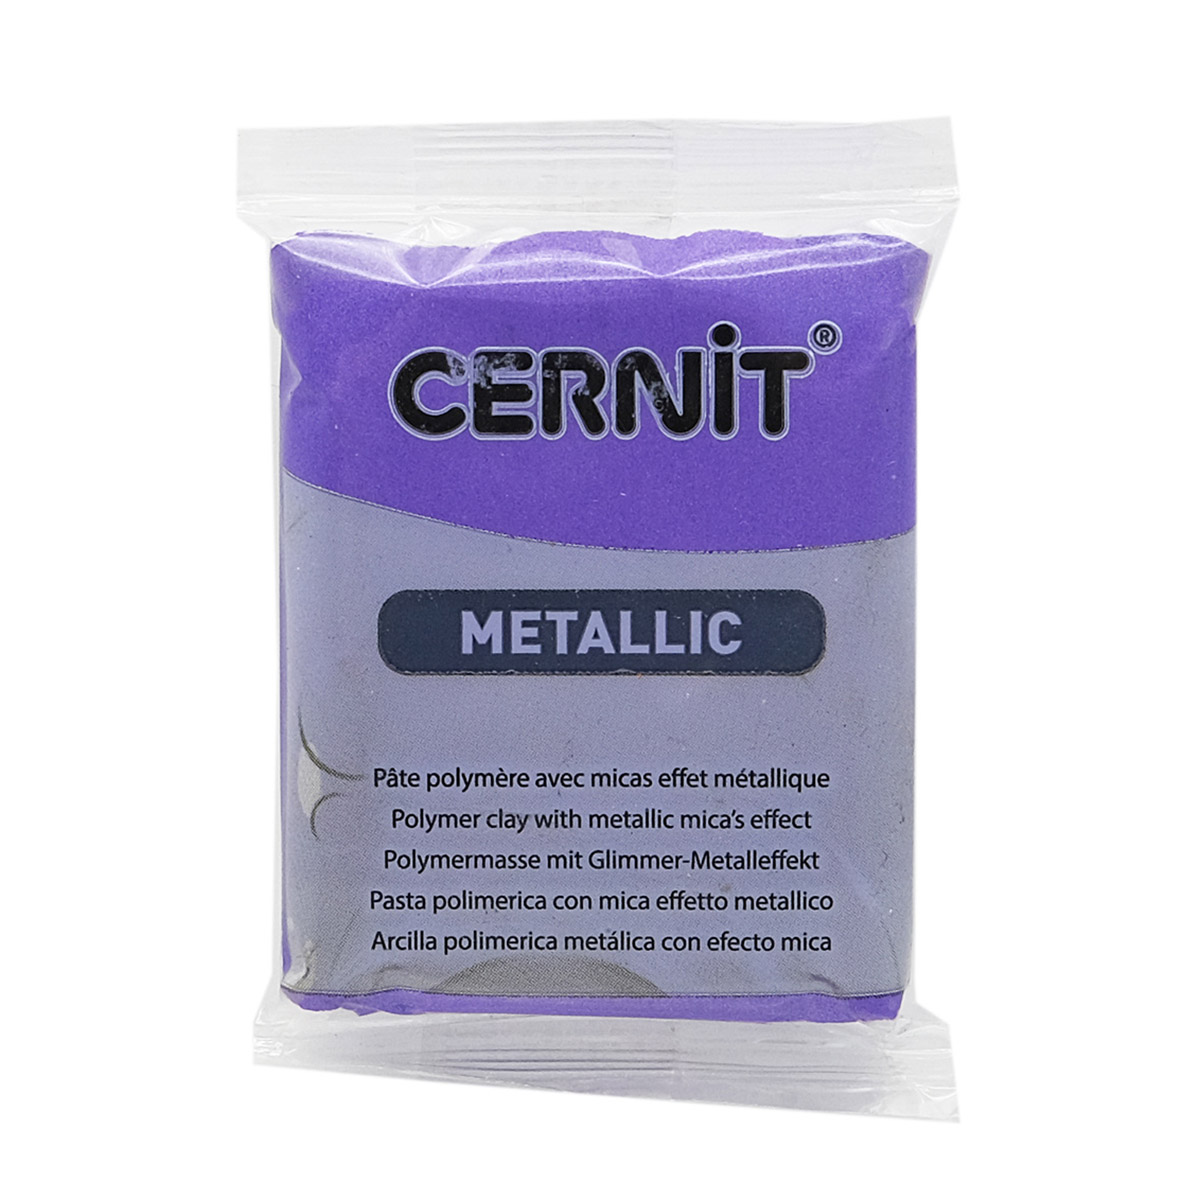 Пластика Cernit Metallic, 56 грамм, цвет 900 фиолетовый, арт. CE0870056 скакалка гимнастическая body form bf sk05 2 5м 130гр фиолетовый